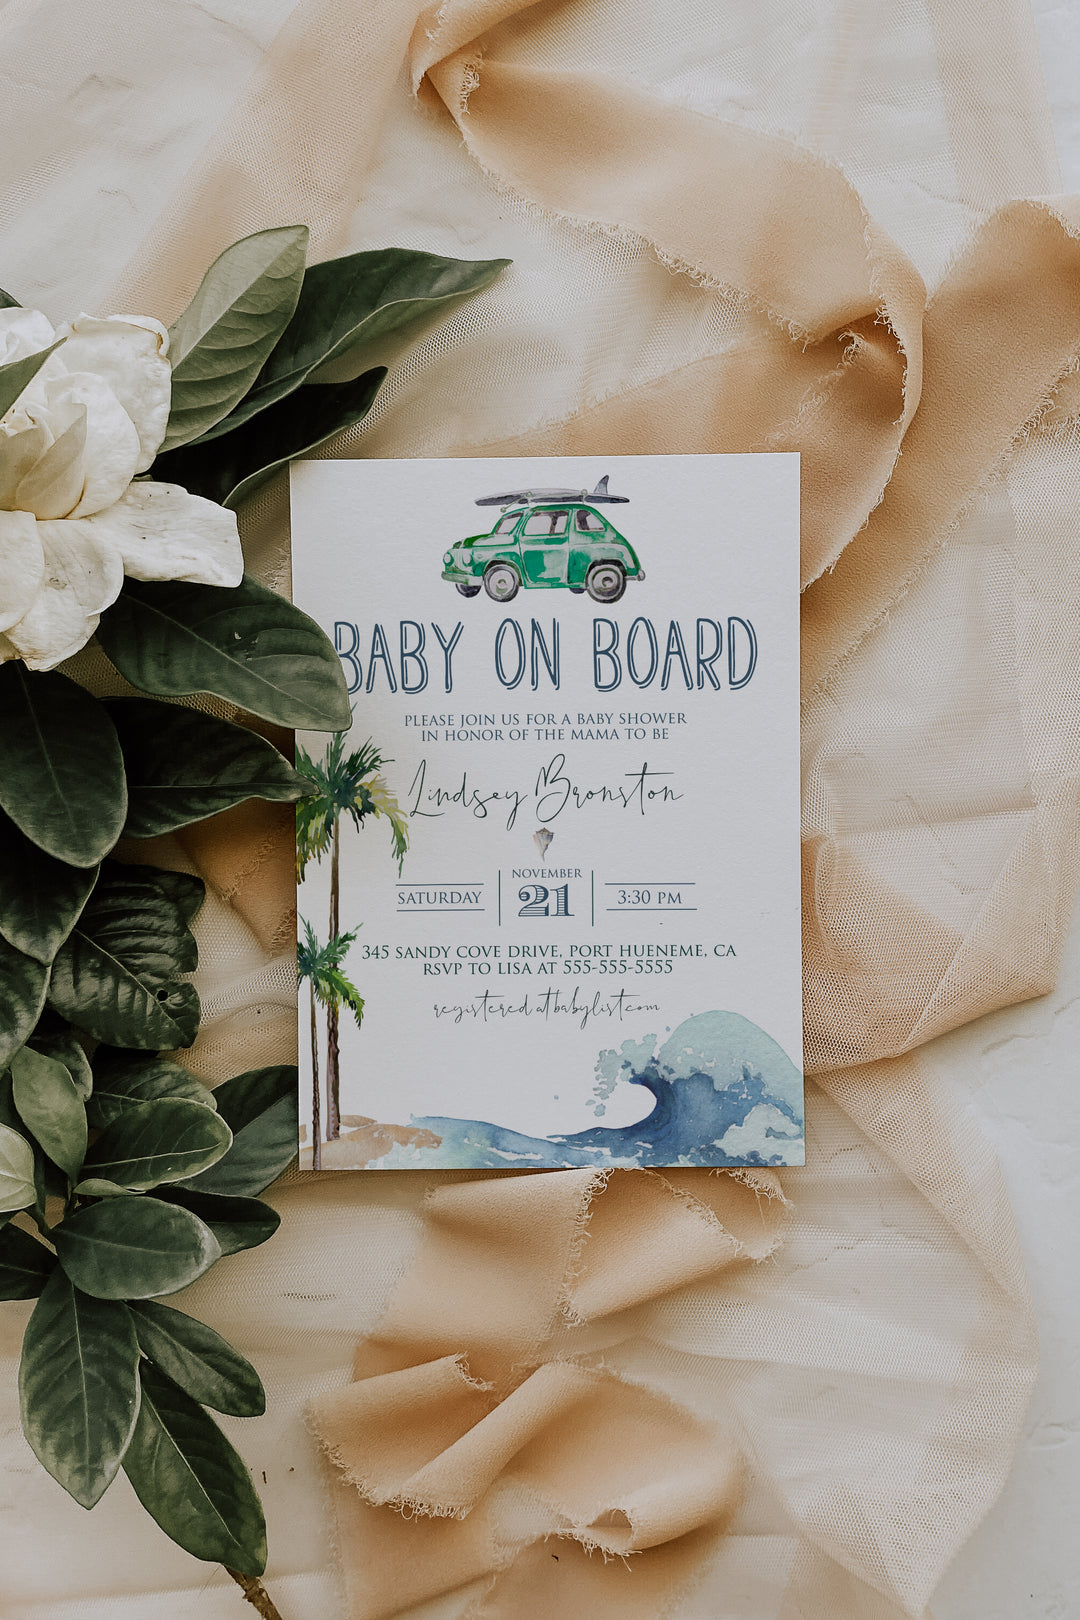 Surfing Theme Baby Shower Invitation - Beach Theme Baby Shower Invitation - Baby on Board Invitation - California Beach Baby Shower Invitation